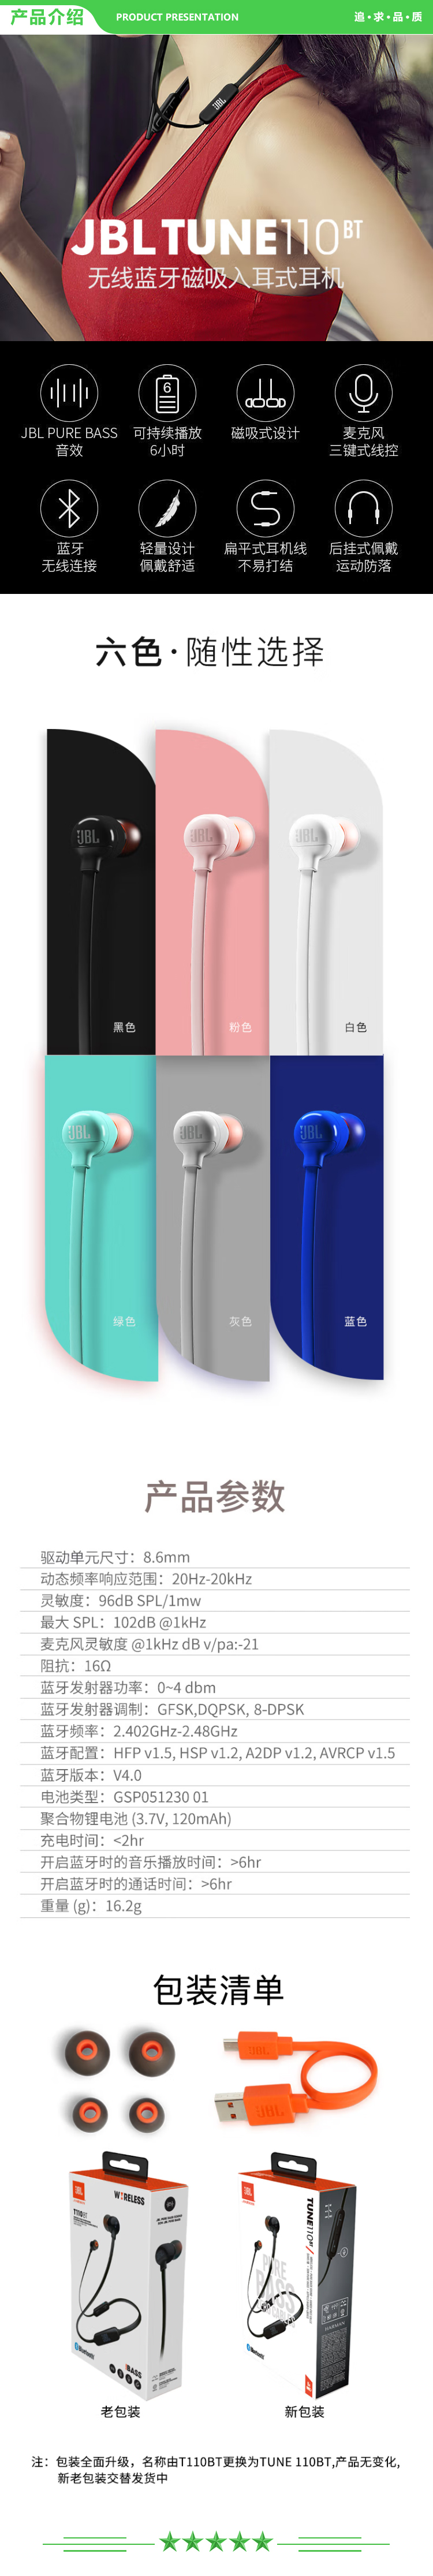 JBL TUNE 110BT 蓝牙无线耳机 运动音乐游戏耳机 苹果华为小米入耳式耳机 带麦可通话 白色 .jpg